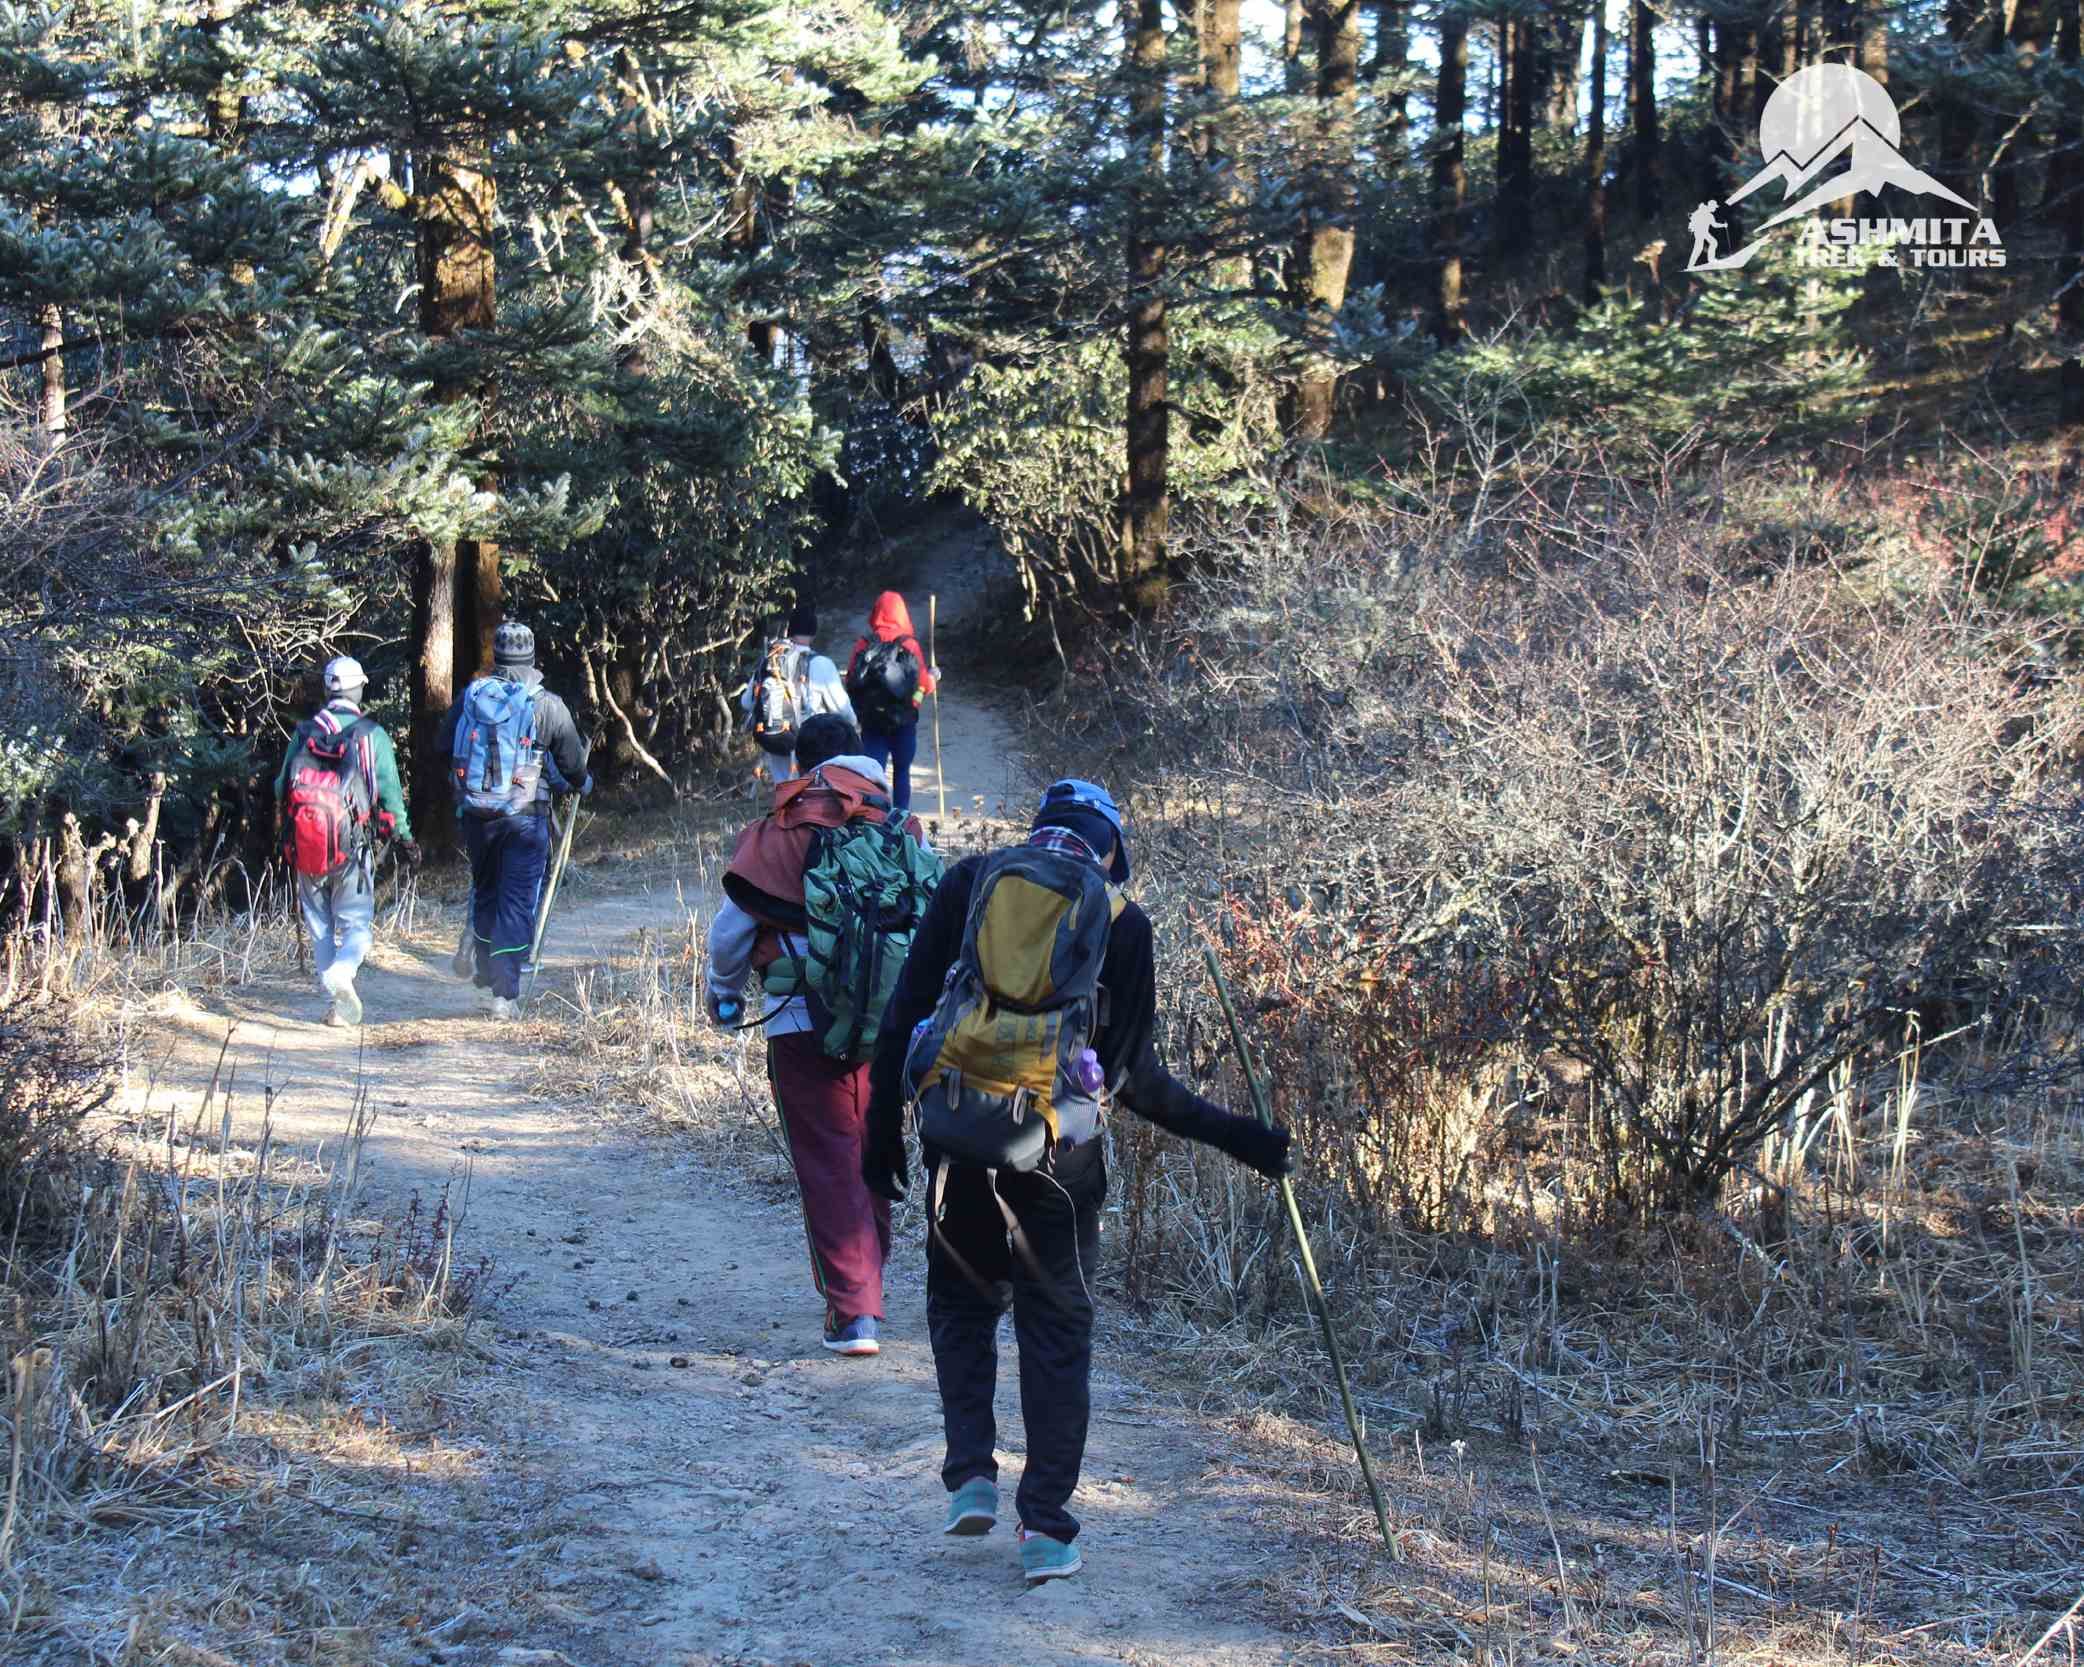 Trekkers during the trek through dense forest